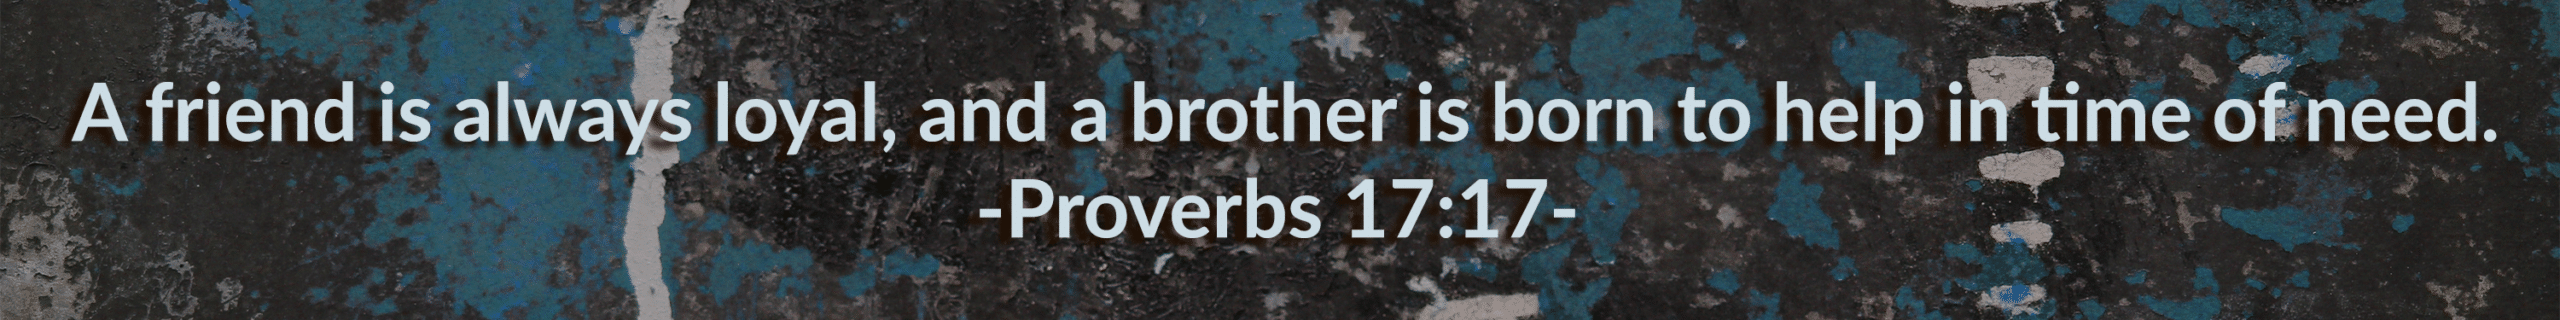 Proverbs-17-17